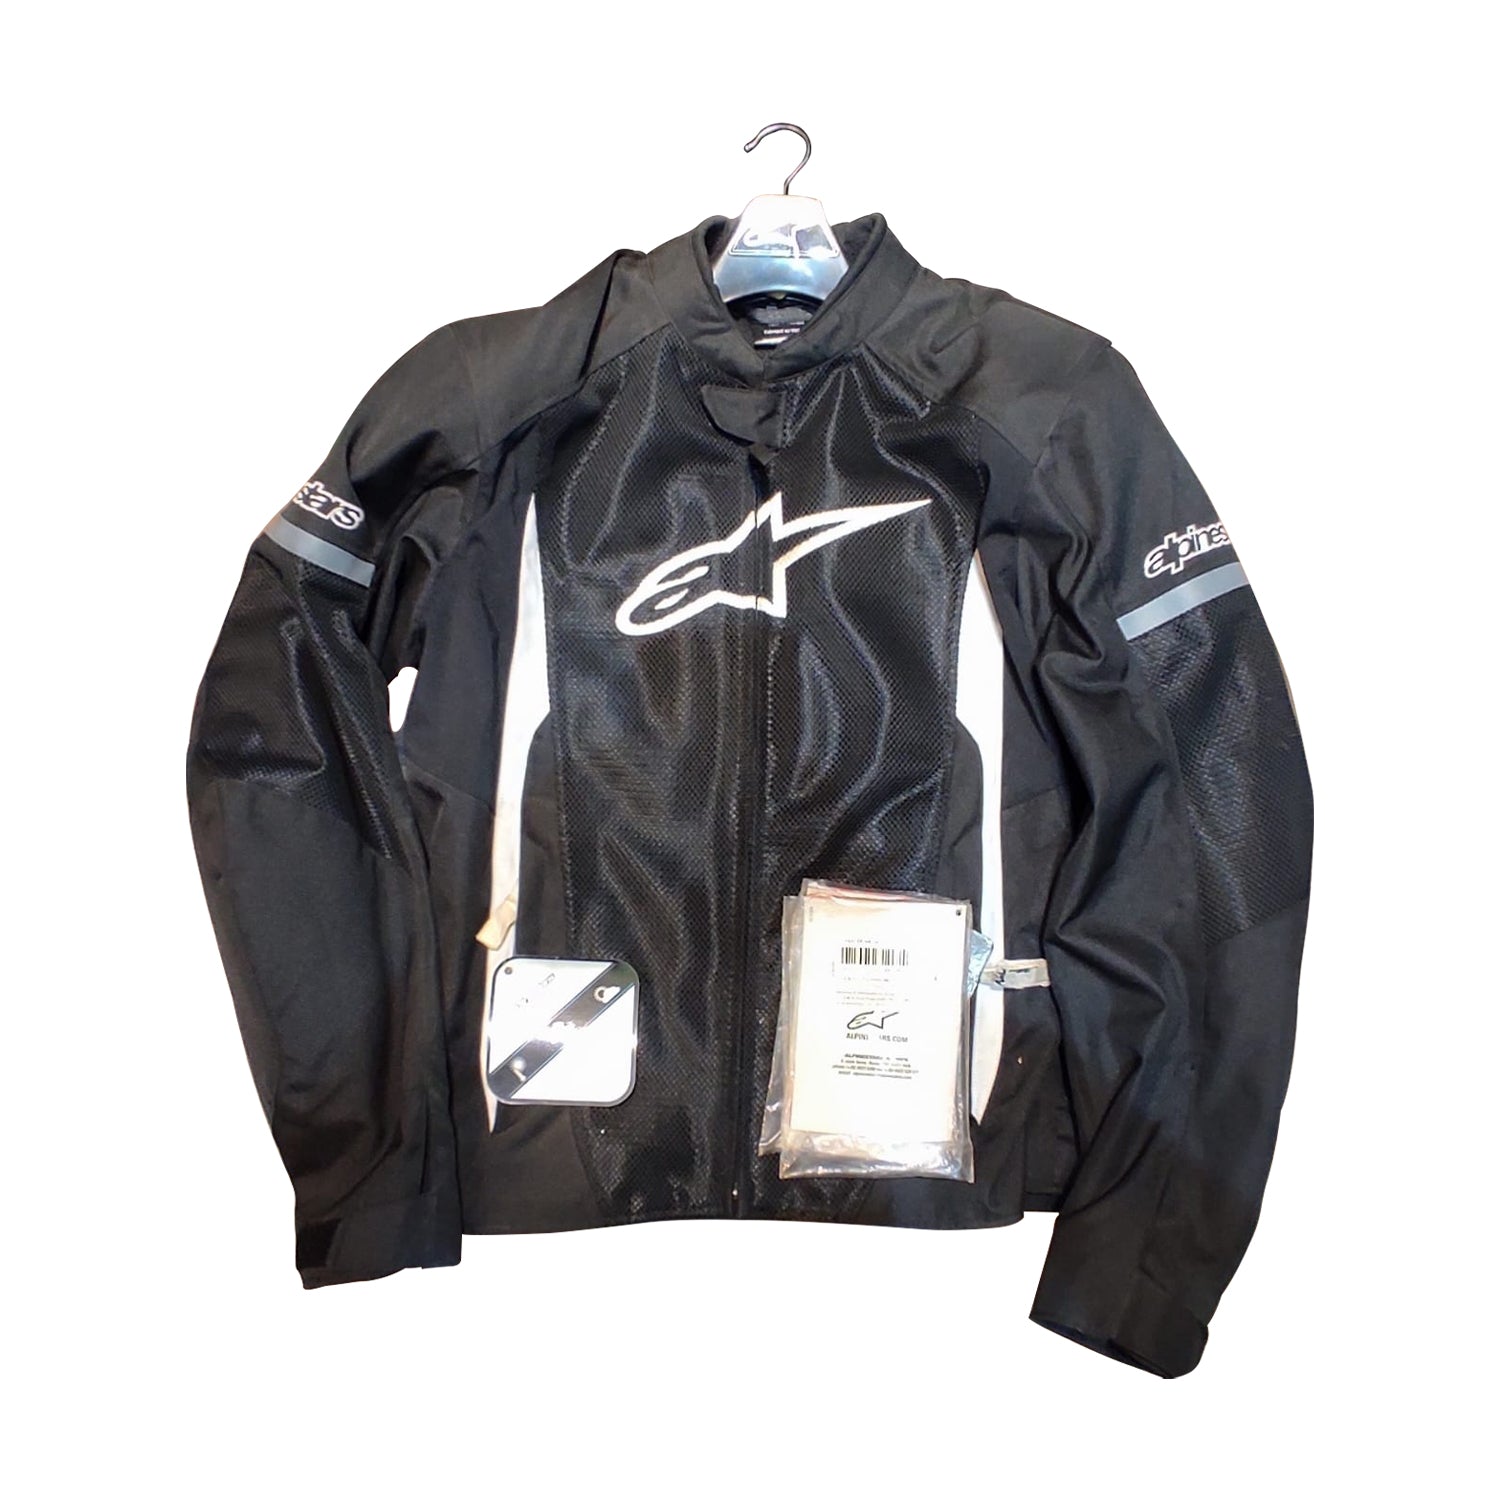 Pre-owned CRAMSTER Women's Jacket Breezer, Size M (020) – GEAR N RIDE – Shop